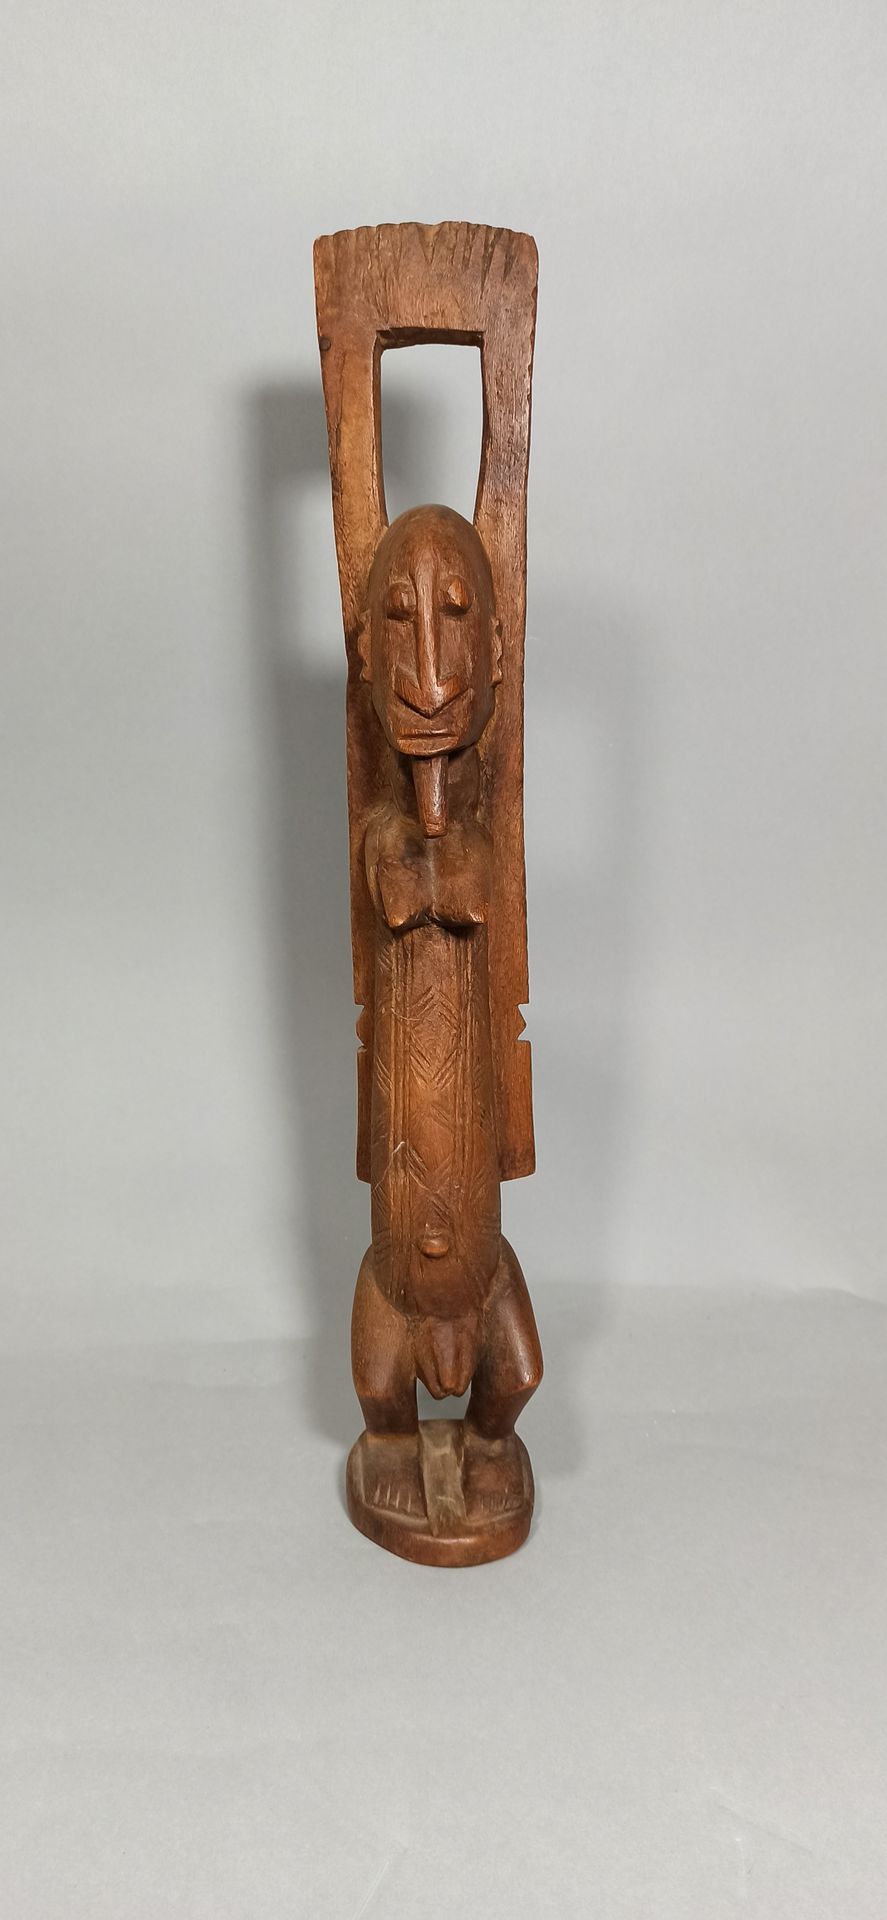 Null Estatua dogón con los brazos levantados, hacia 1960.

Altura: 66 cm